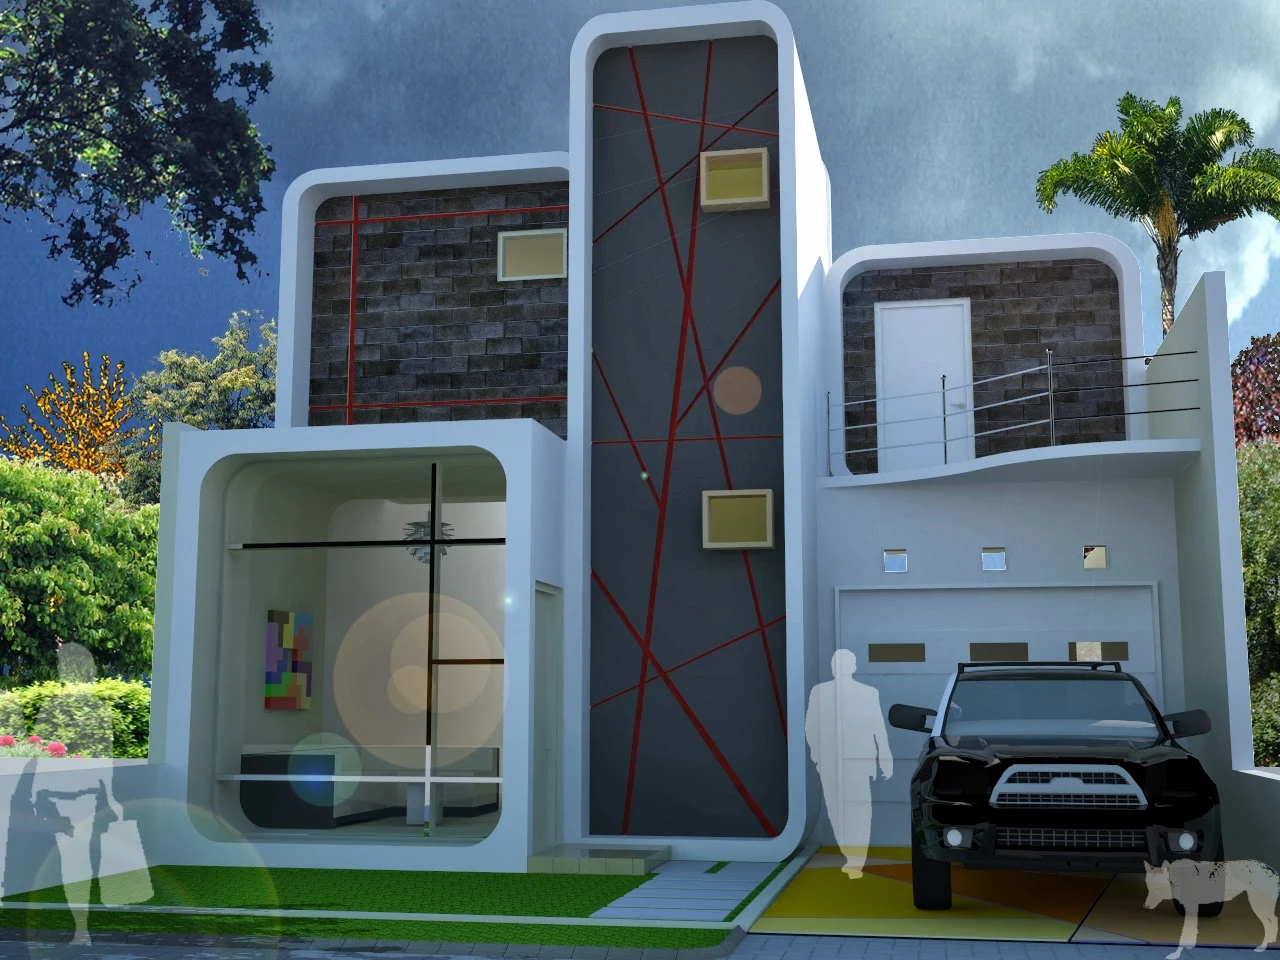 50 Model Desain Rumah Minimalis 2 Lantai Desainrumahnyacom